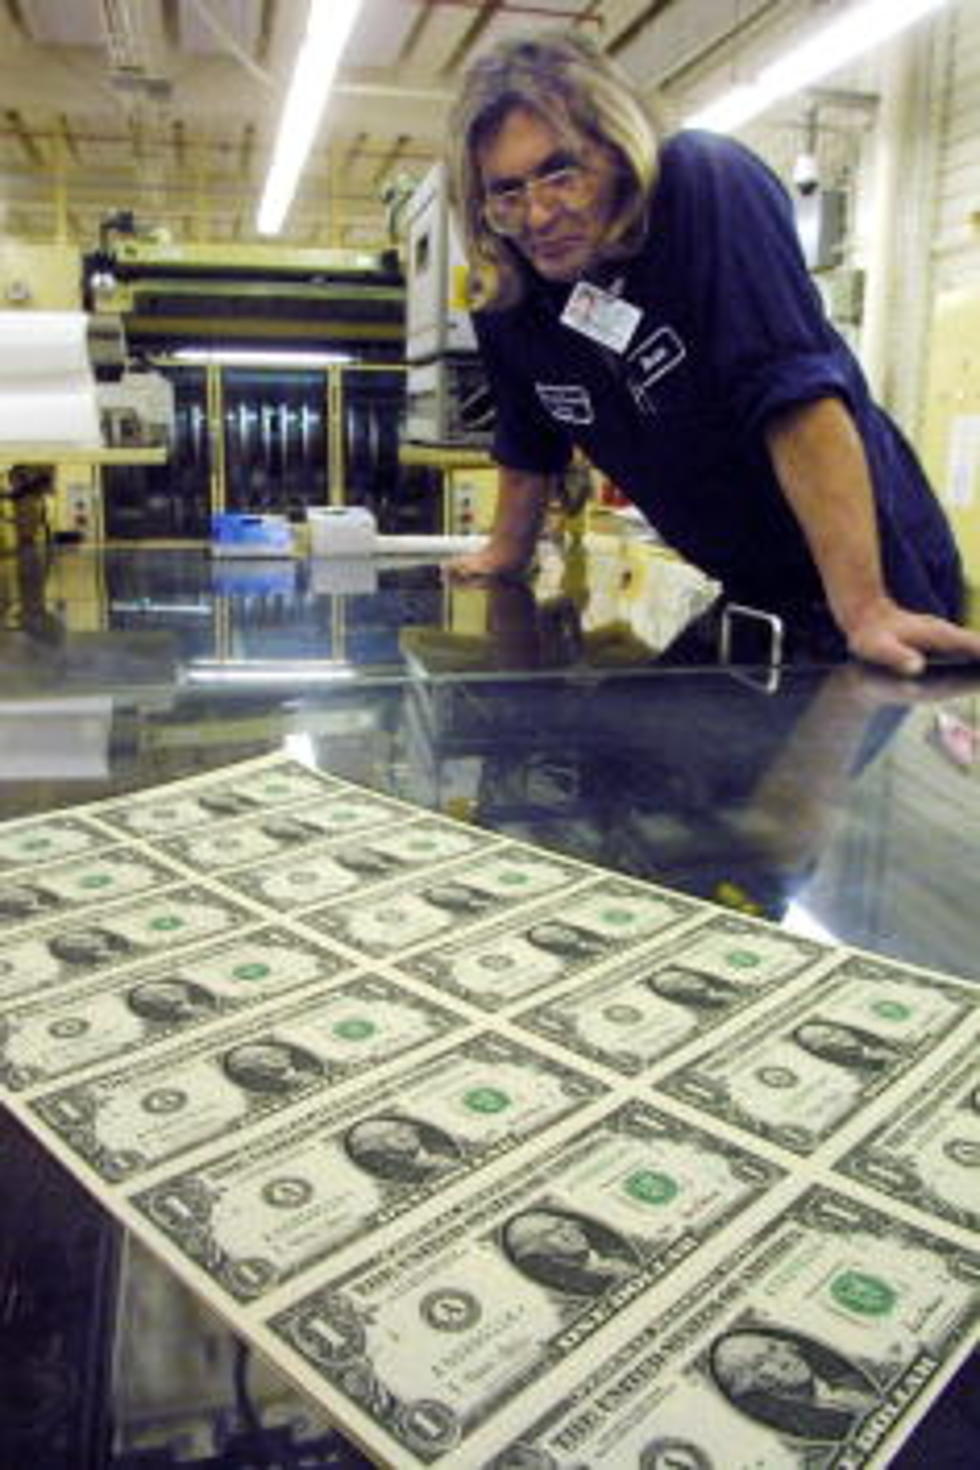 Examining The Dollar Bill